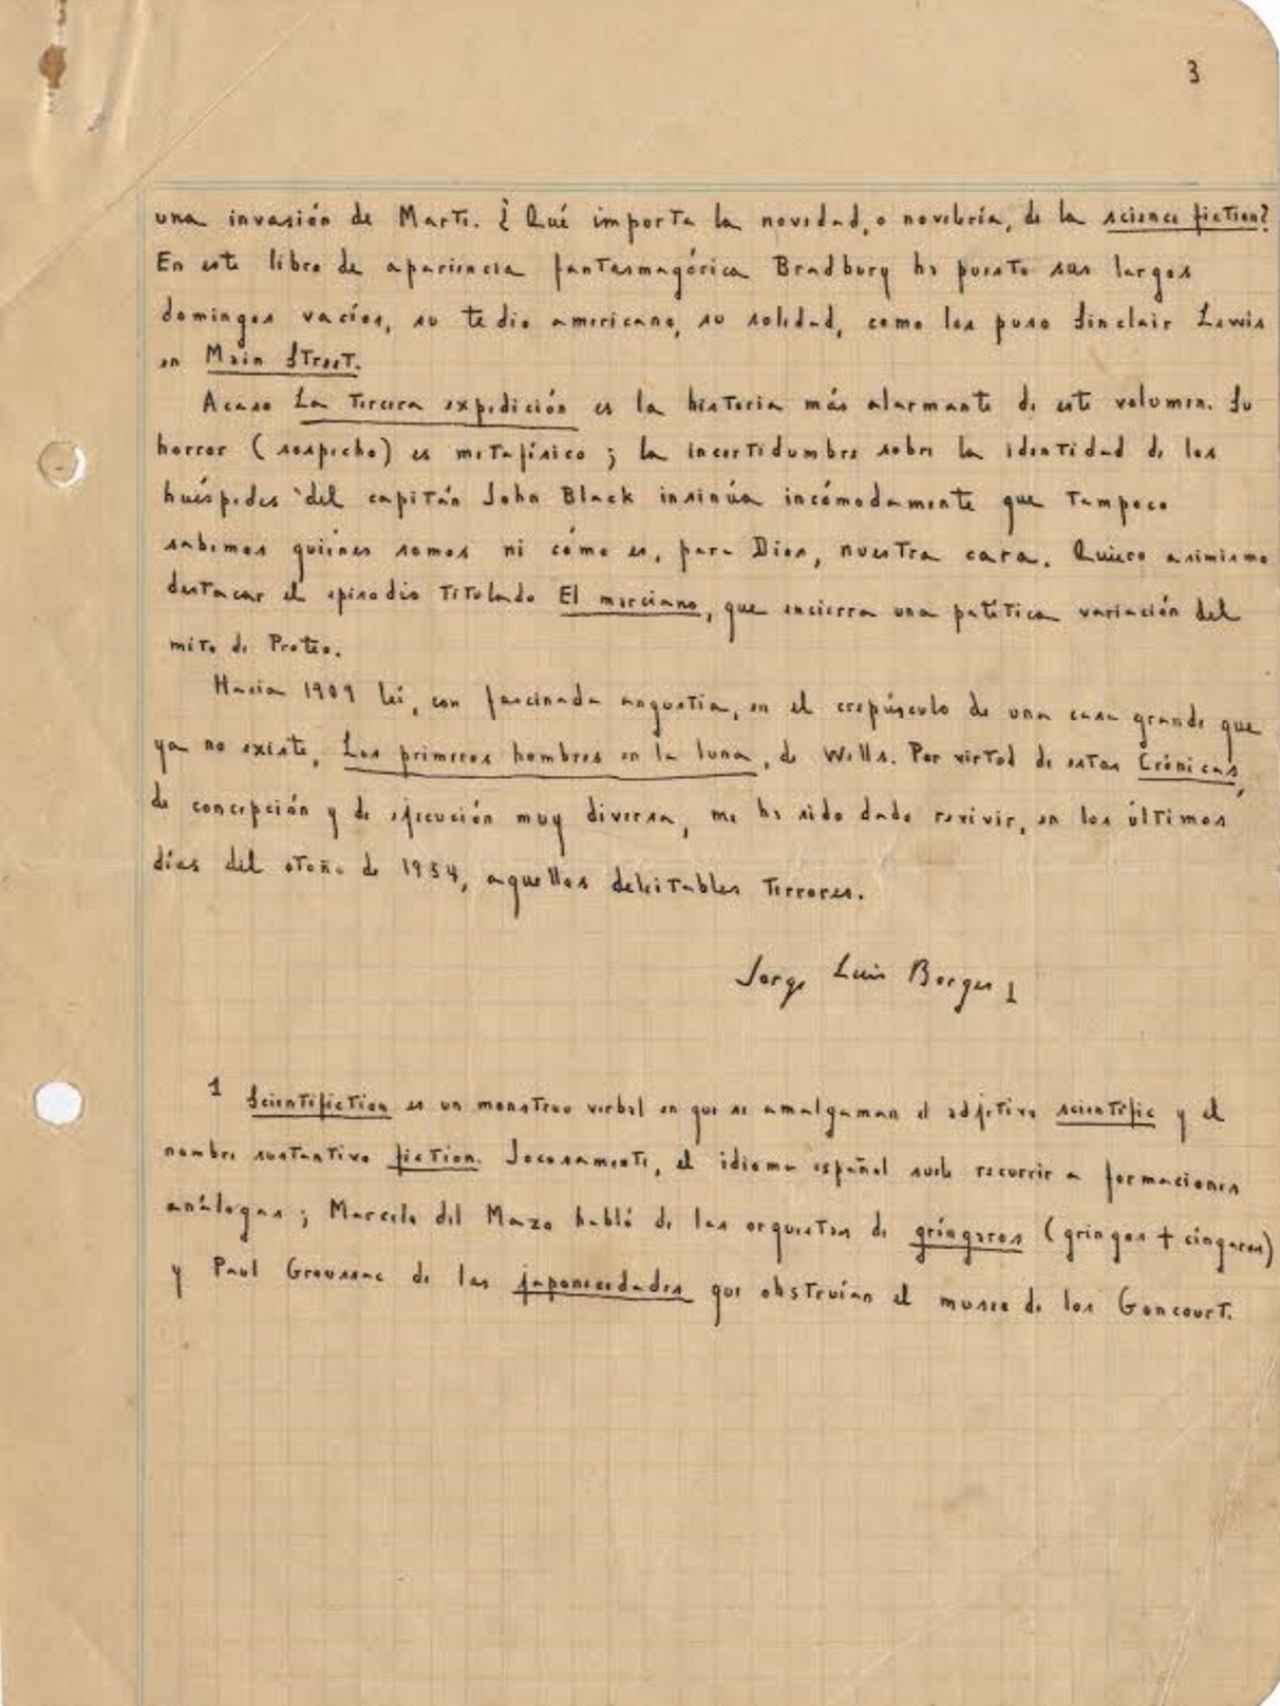 El manuscriot de Borges del prólogo de la traducción de Crónicas Marcianas.